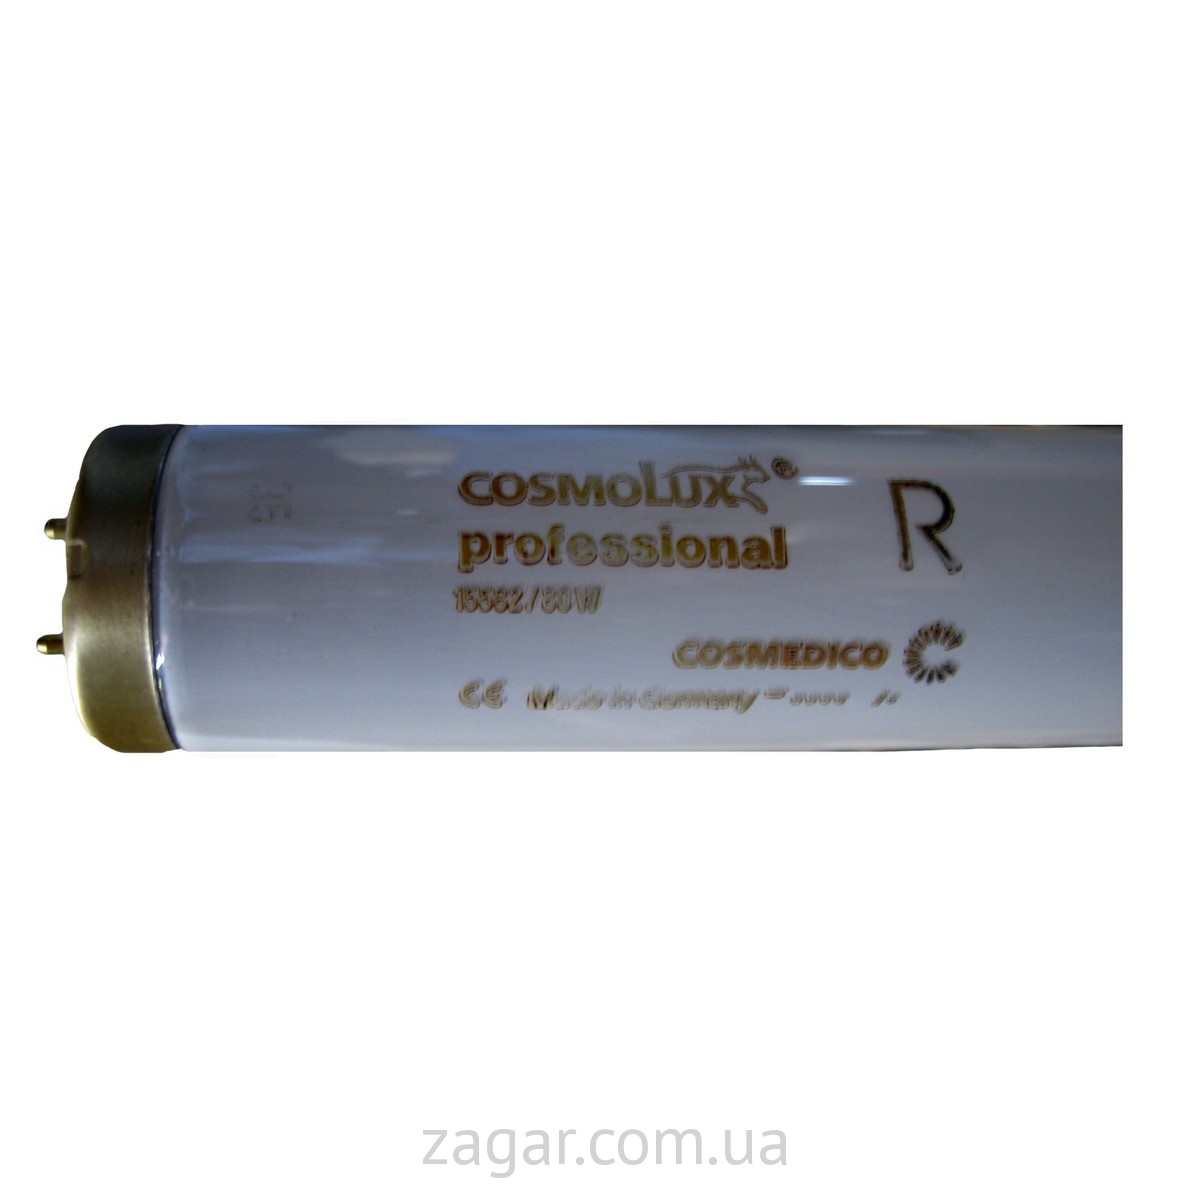 Cosmolux R-professional 1,5% 80W 1500mm 500h 